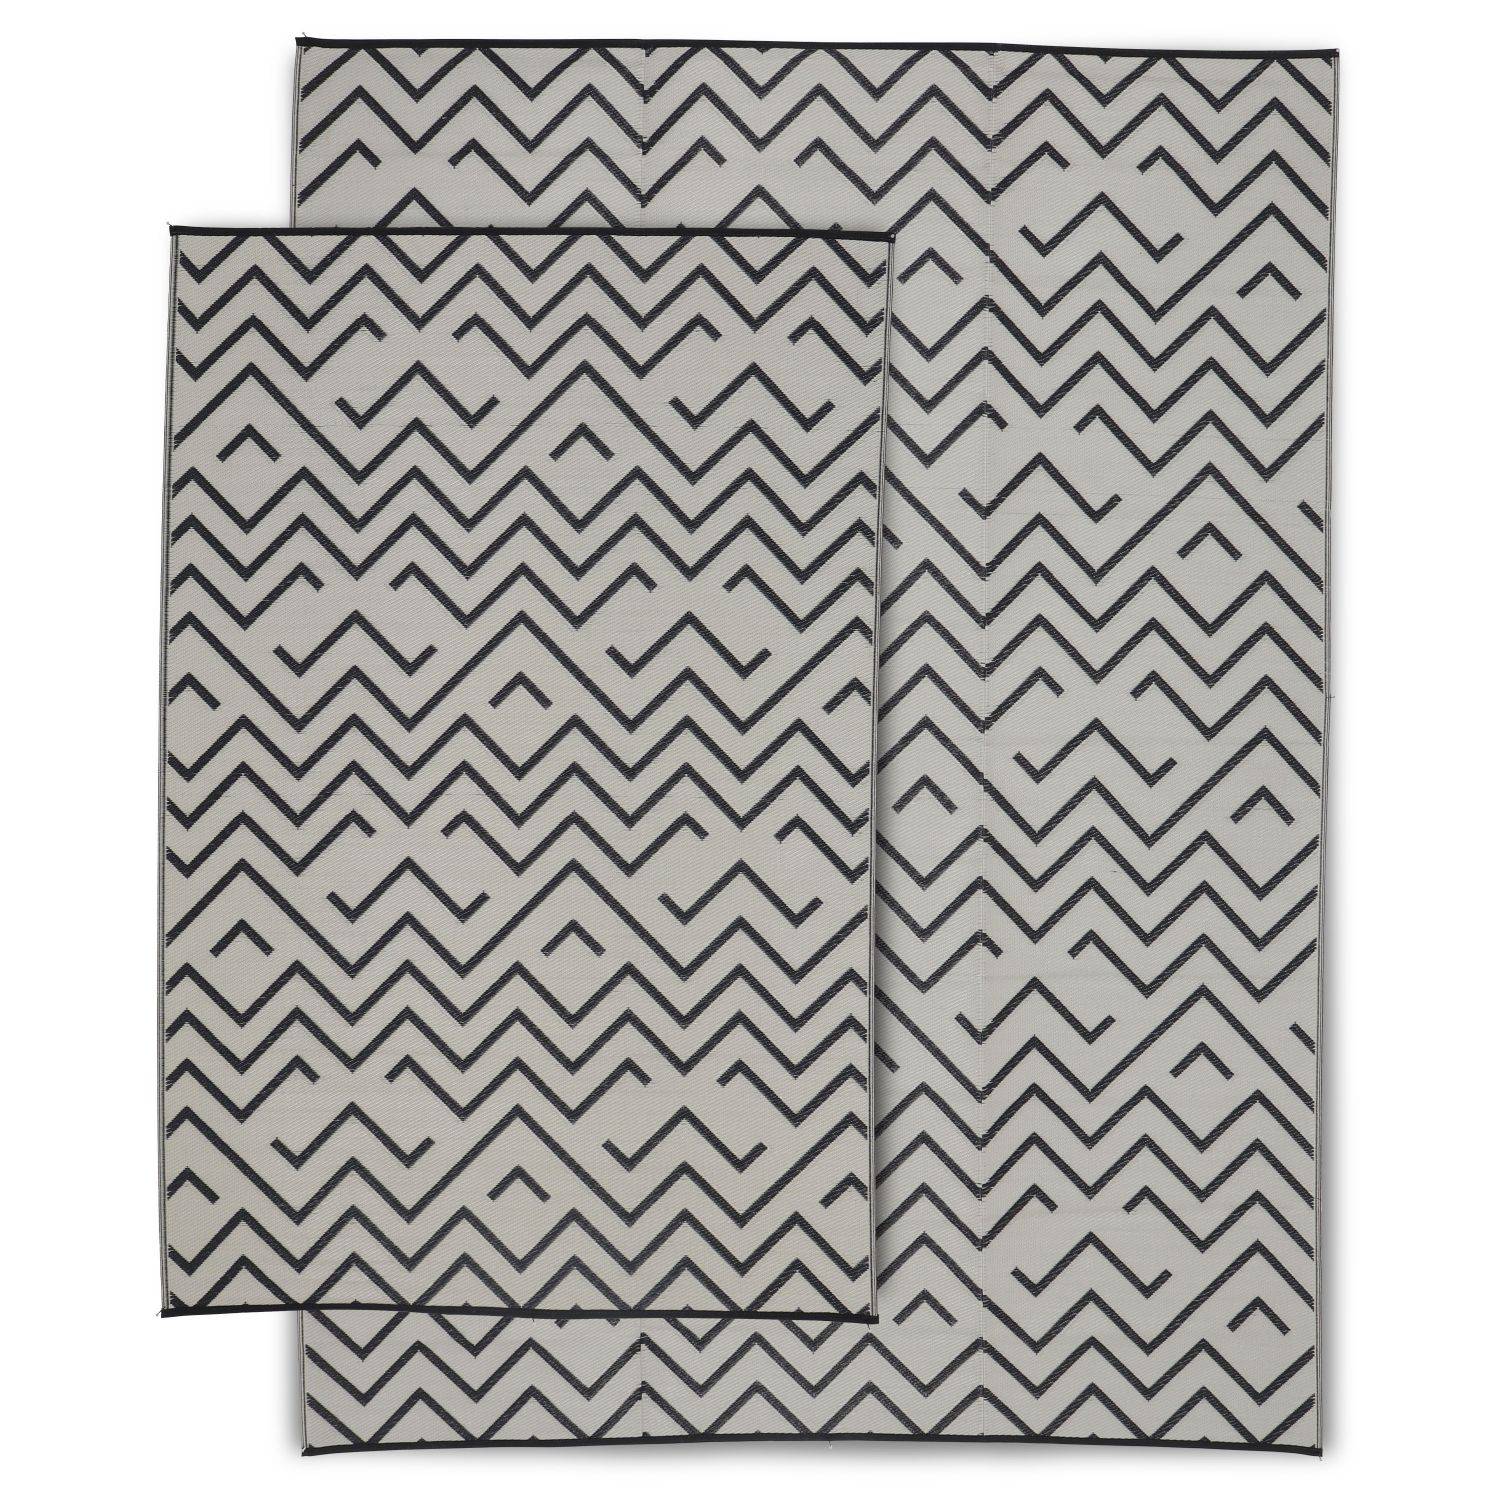 Tappeto per esterni 180x270cm SYDNEY - Rettangolare, motivo a onde nero / beige, jacquard, reversibile, interno / esterno Photo5